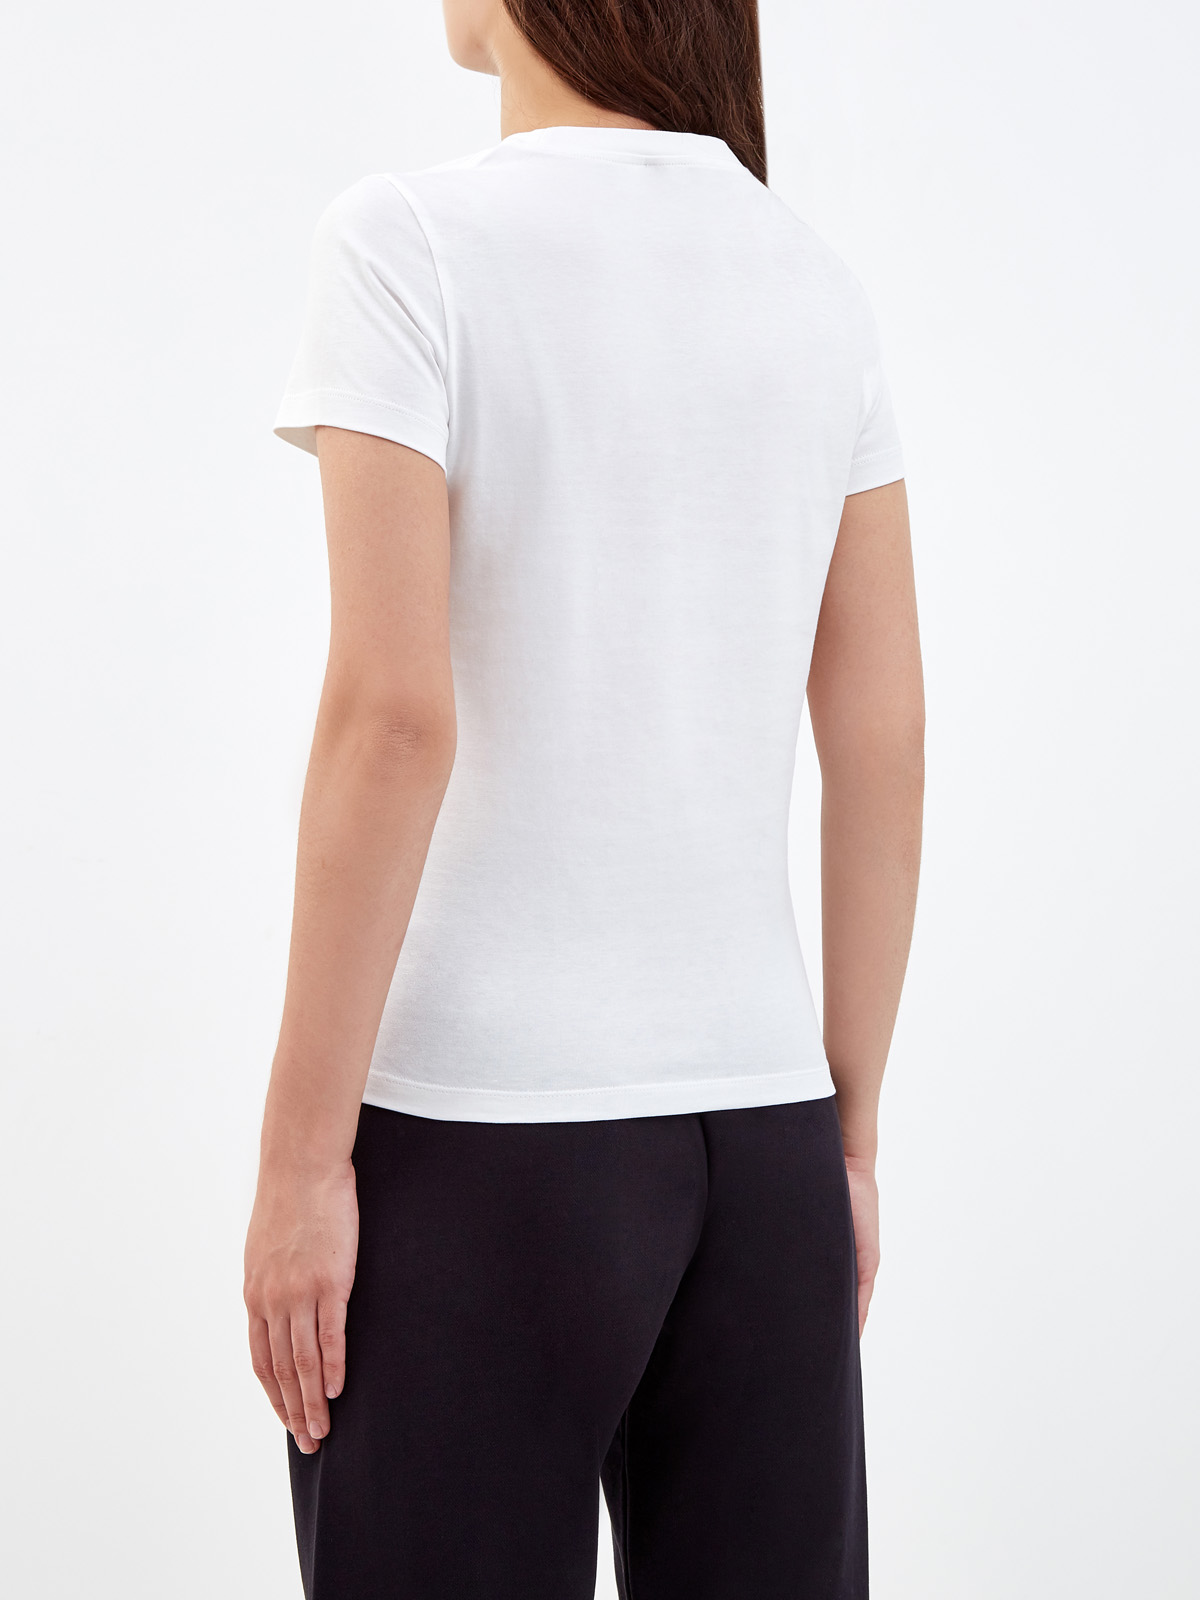 Хлопковая футболка из гладкого джерси с вышитой эмблемой бренда KENZO, цвет белый, размер M;L;XL;XS - фото 4